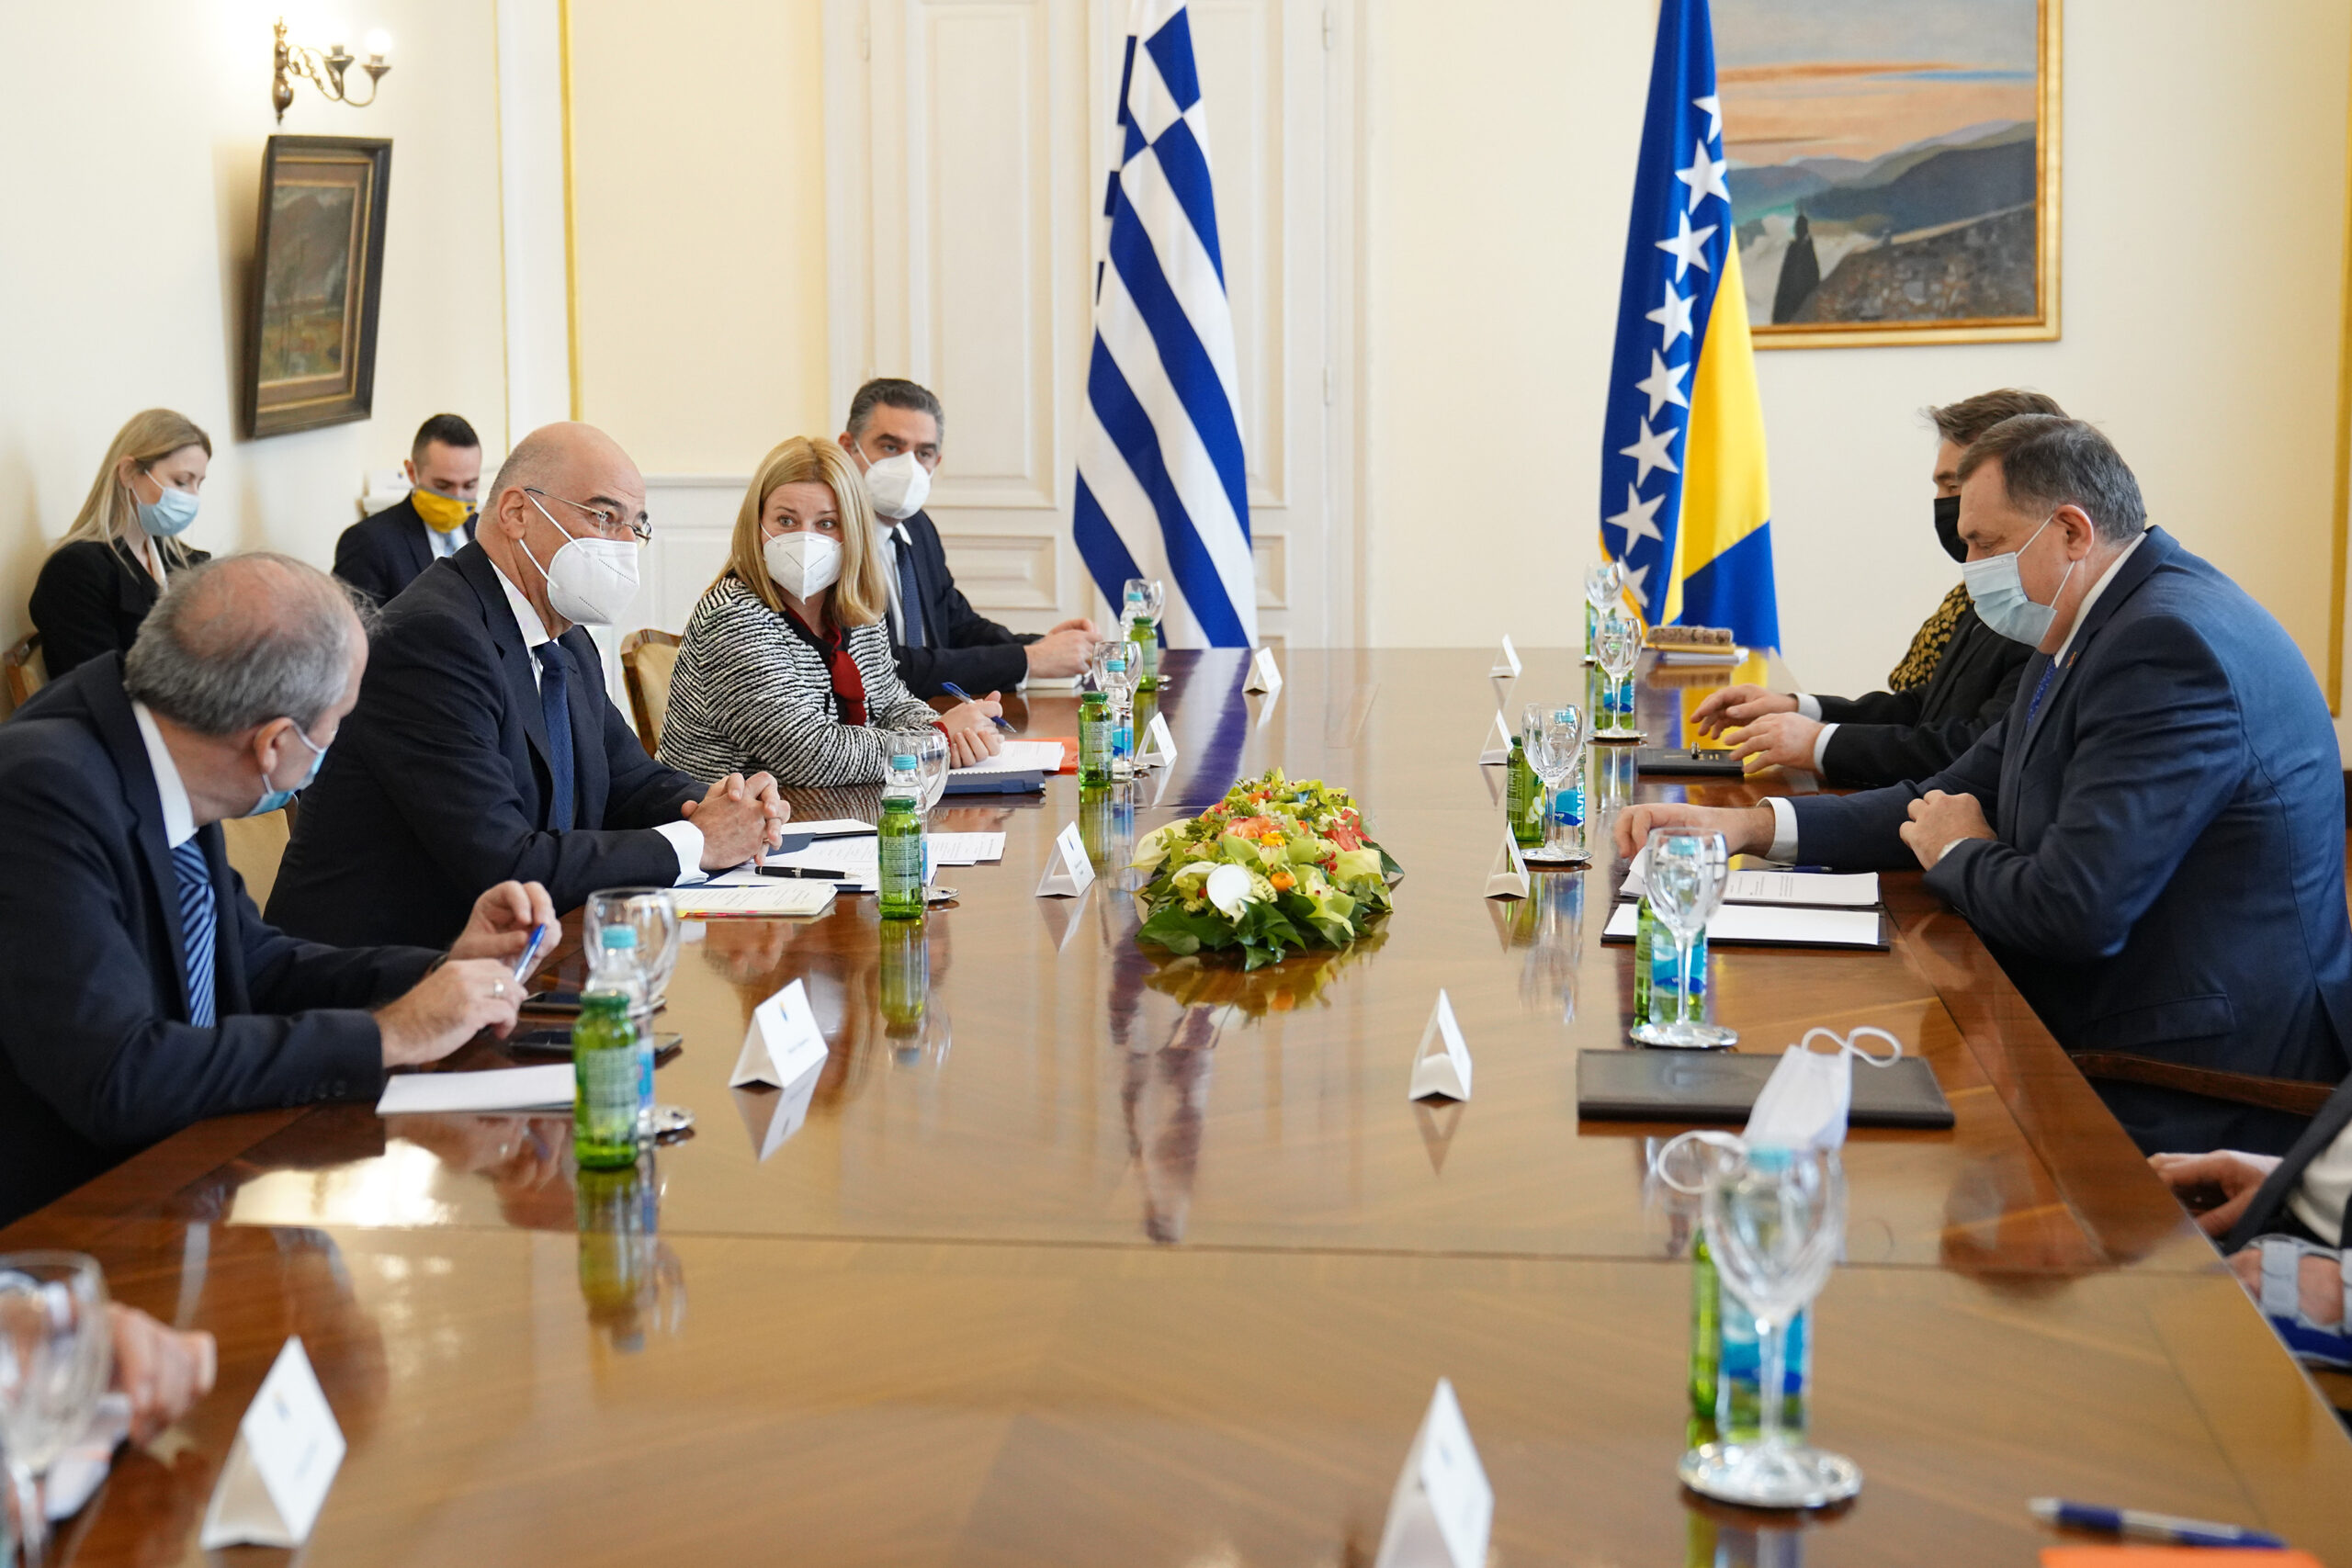 Επίσκεψη Υπουργού Εξωτερικών, Νίκου Δένδια, στη Βοσνία και Ερζεγοβίνη. Συναντήθηκε στο Σεράγεβο με τα μέλη του συλλογικού Προεδρείου της Βοσνίας και Ερζεγοβίνης και ειδικότερα, με τον κ. Milorad Dodik (Πρόεδρο), τον κ. Željko Komšić και τον κ. Šefik Džaferović ( Σαράγεβο, 29.01.2021)